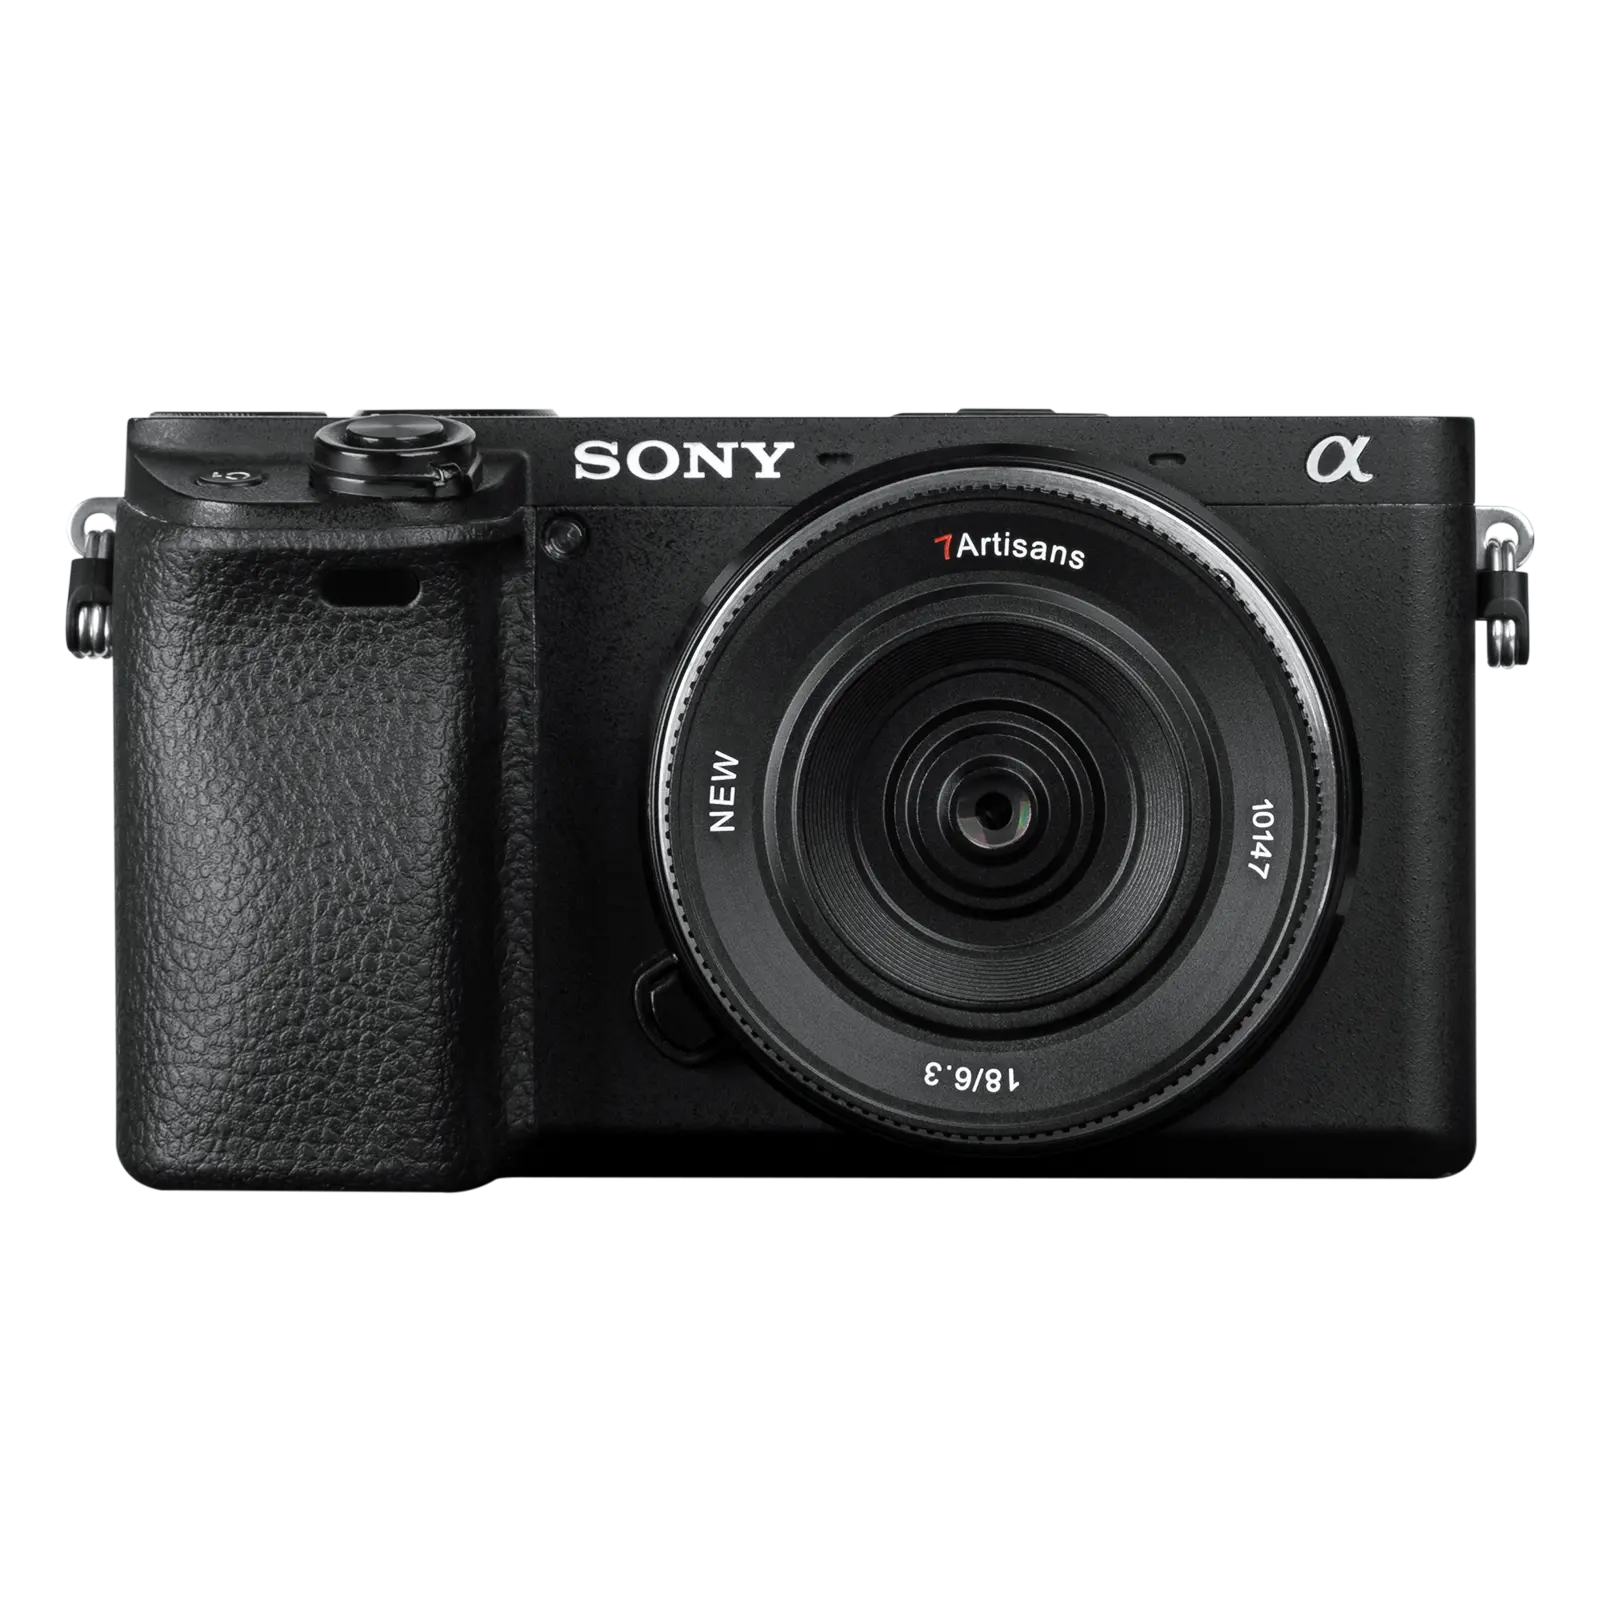 7Artisans 18mmF6.3II Accessoires d'appareil photo Objectif pour appareils photo Sony E, Canon EOS-M, Fuji FX, Nikon Z, M43 avec une qualité d'image supérieure